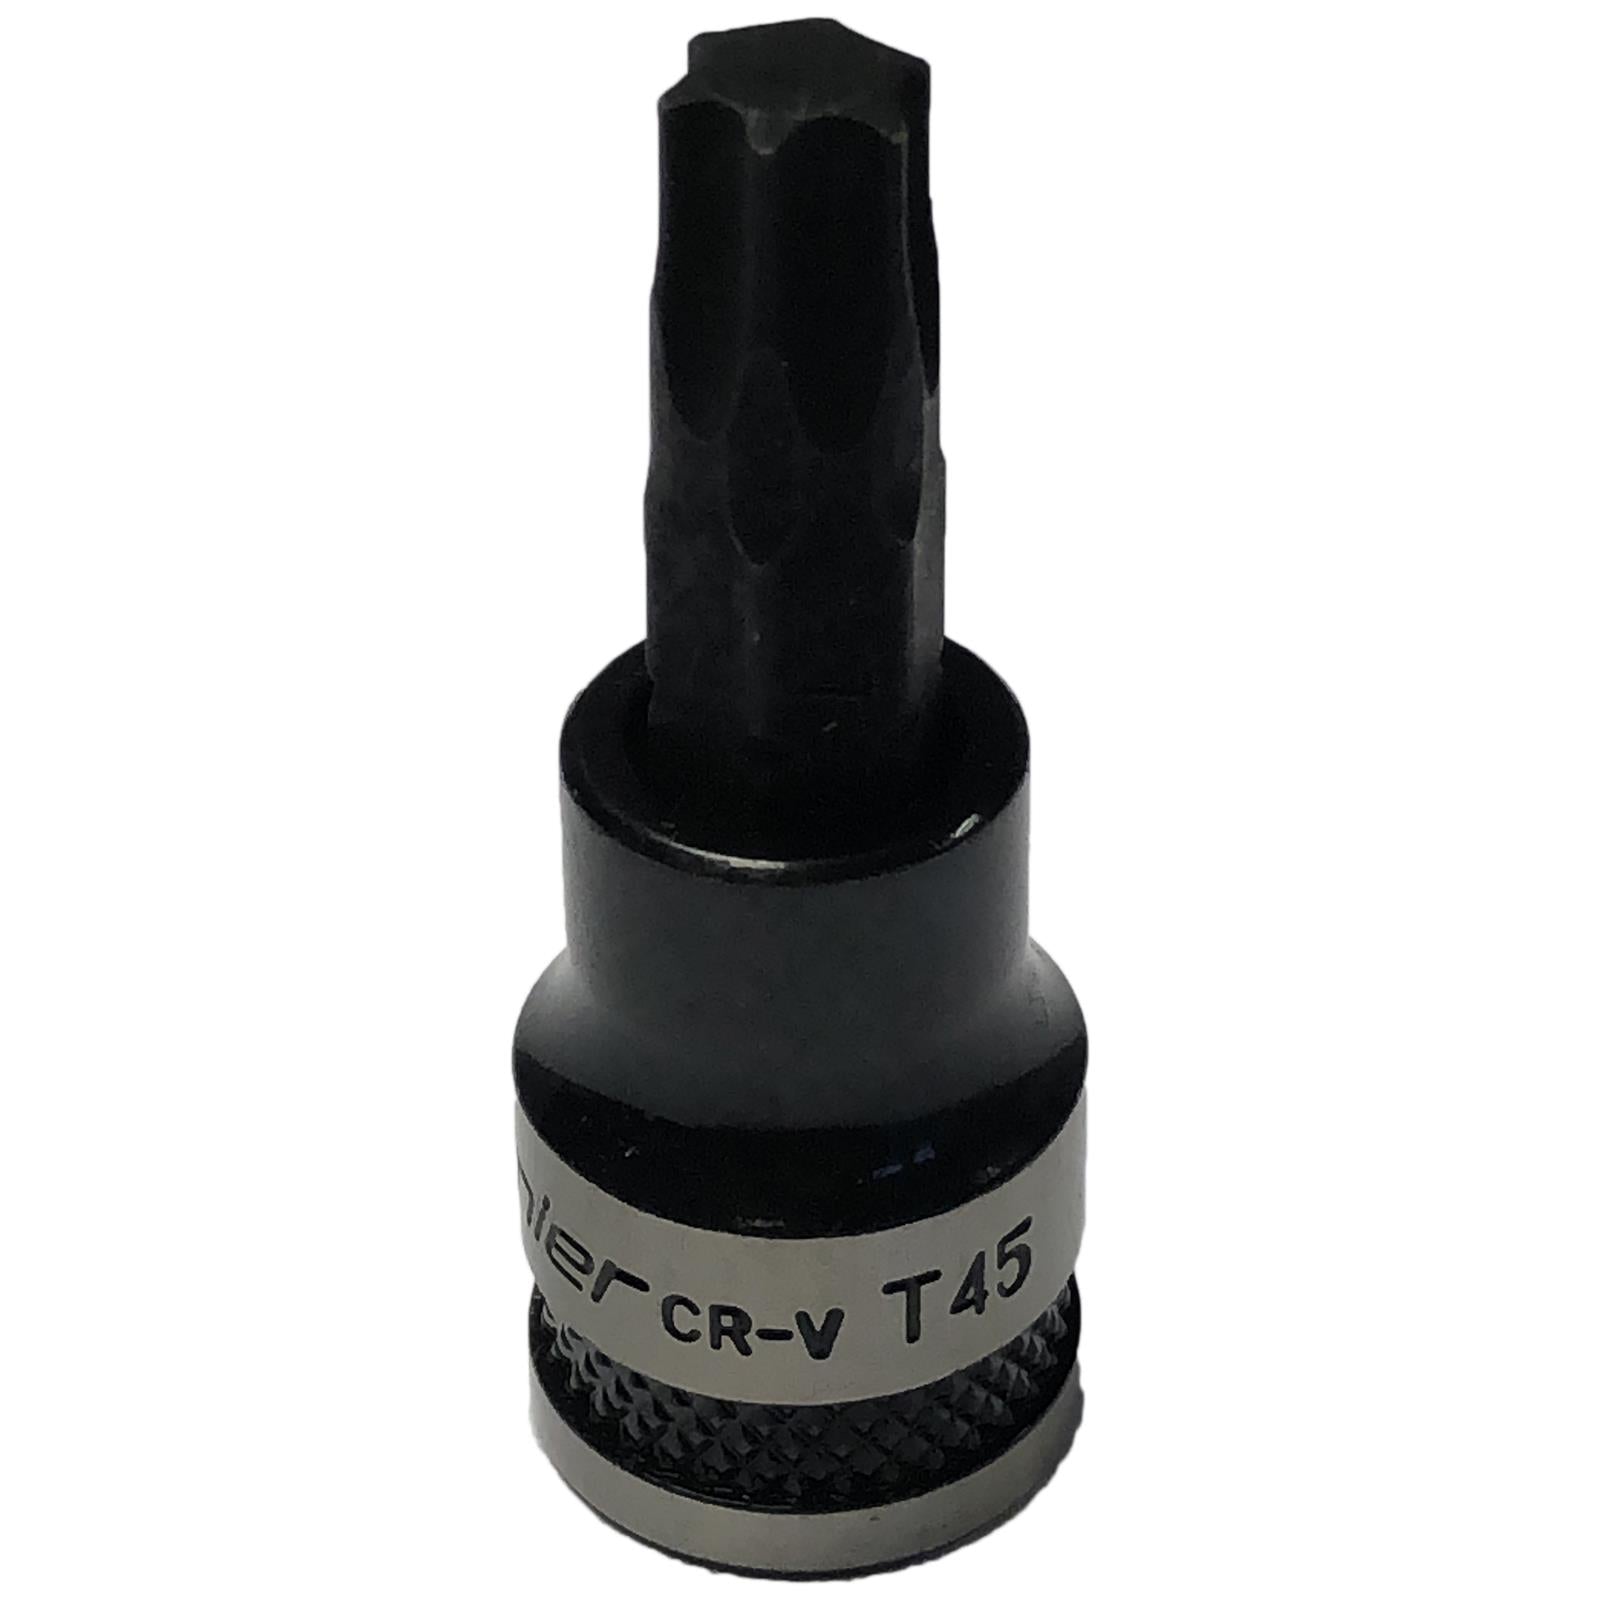 Sealey TRX-Star Socket Bit 3/8" Drive T45 Premier Black Torx